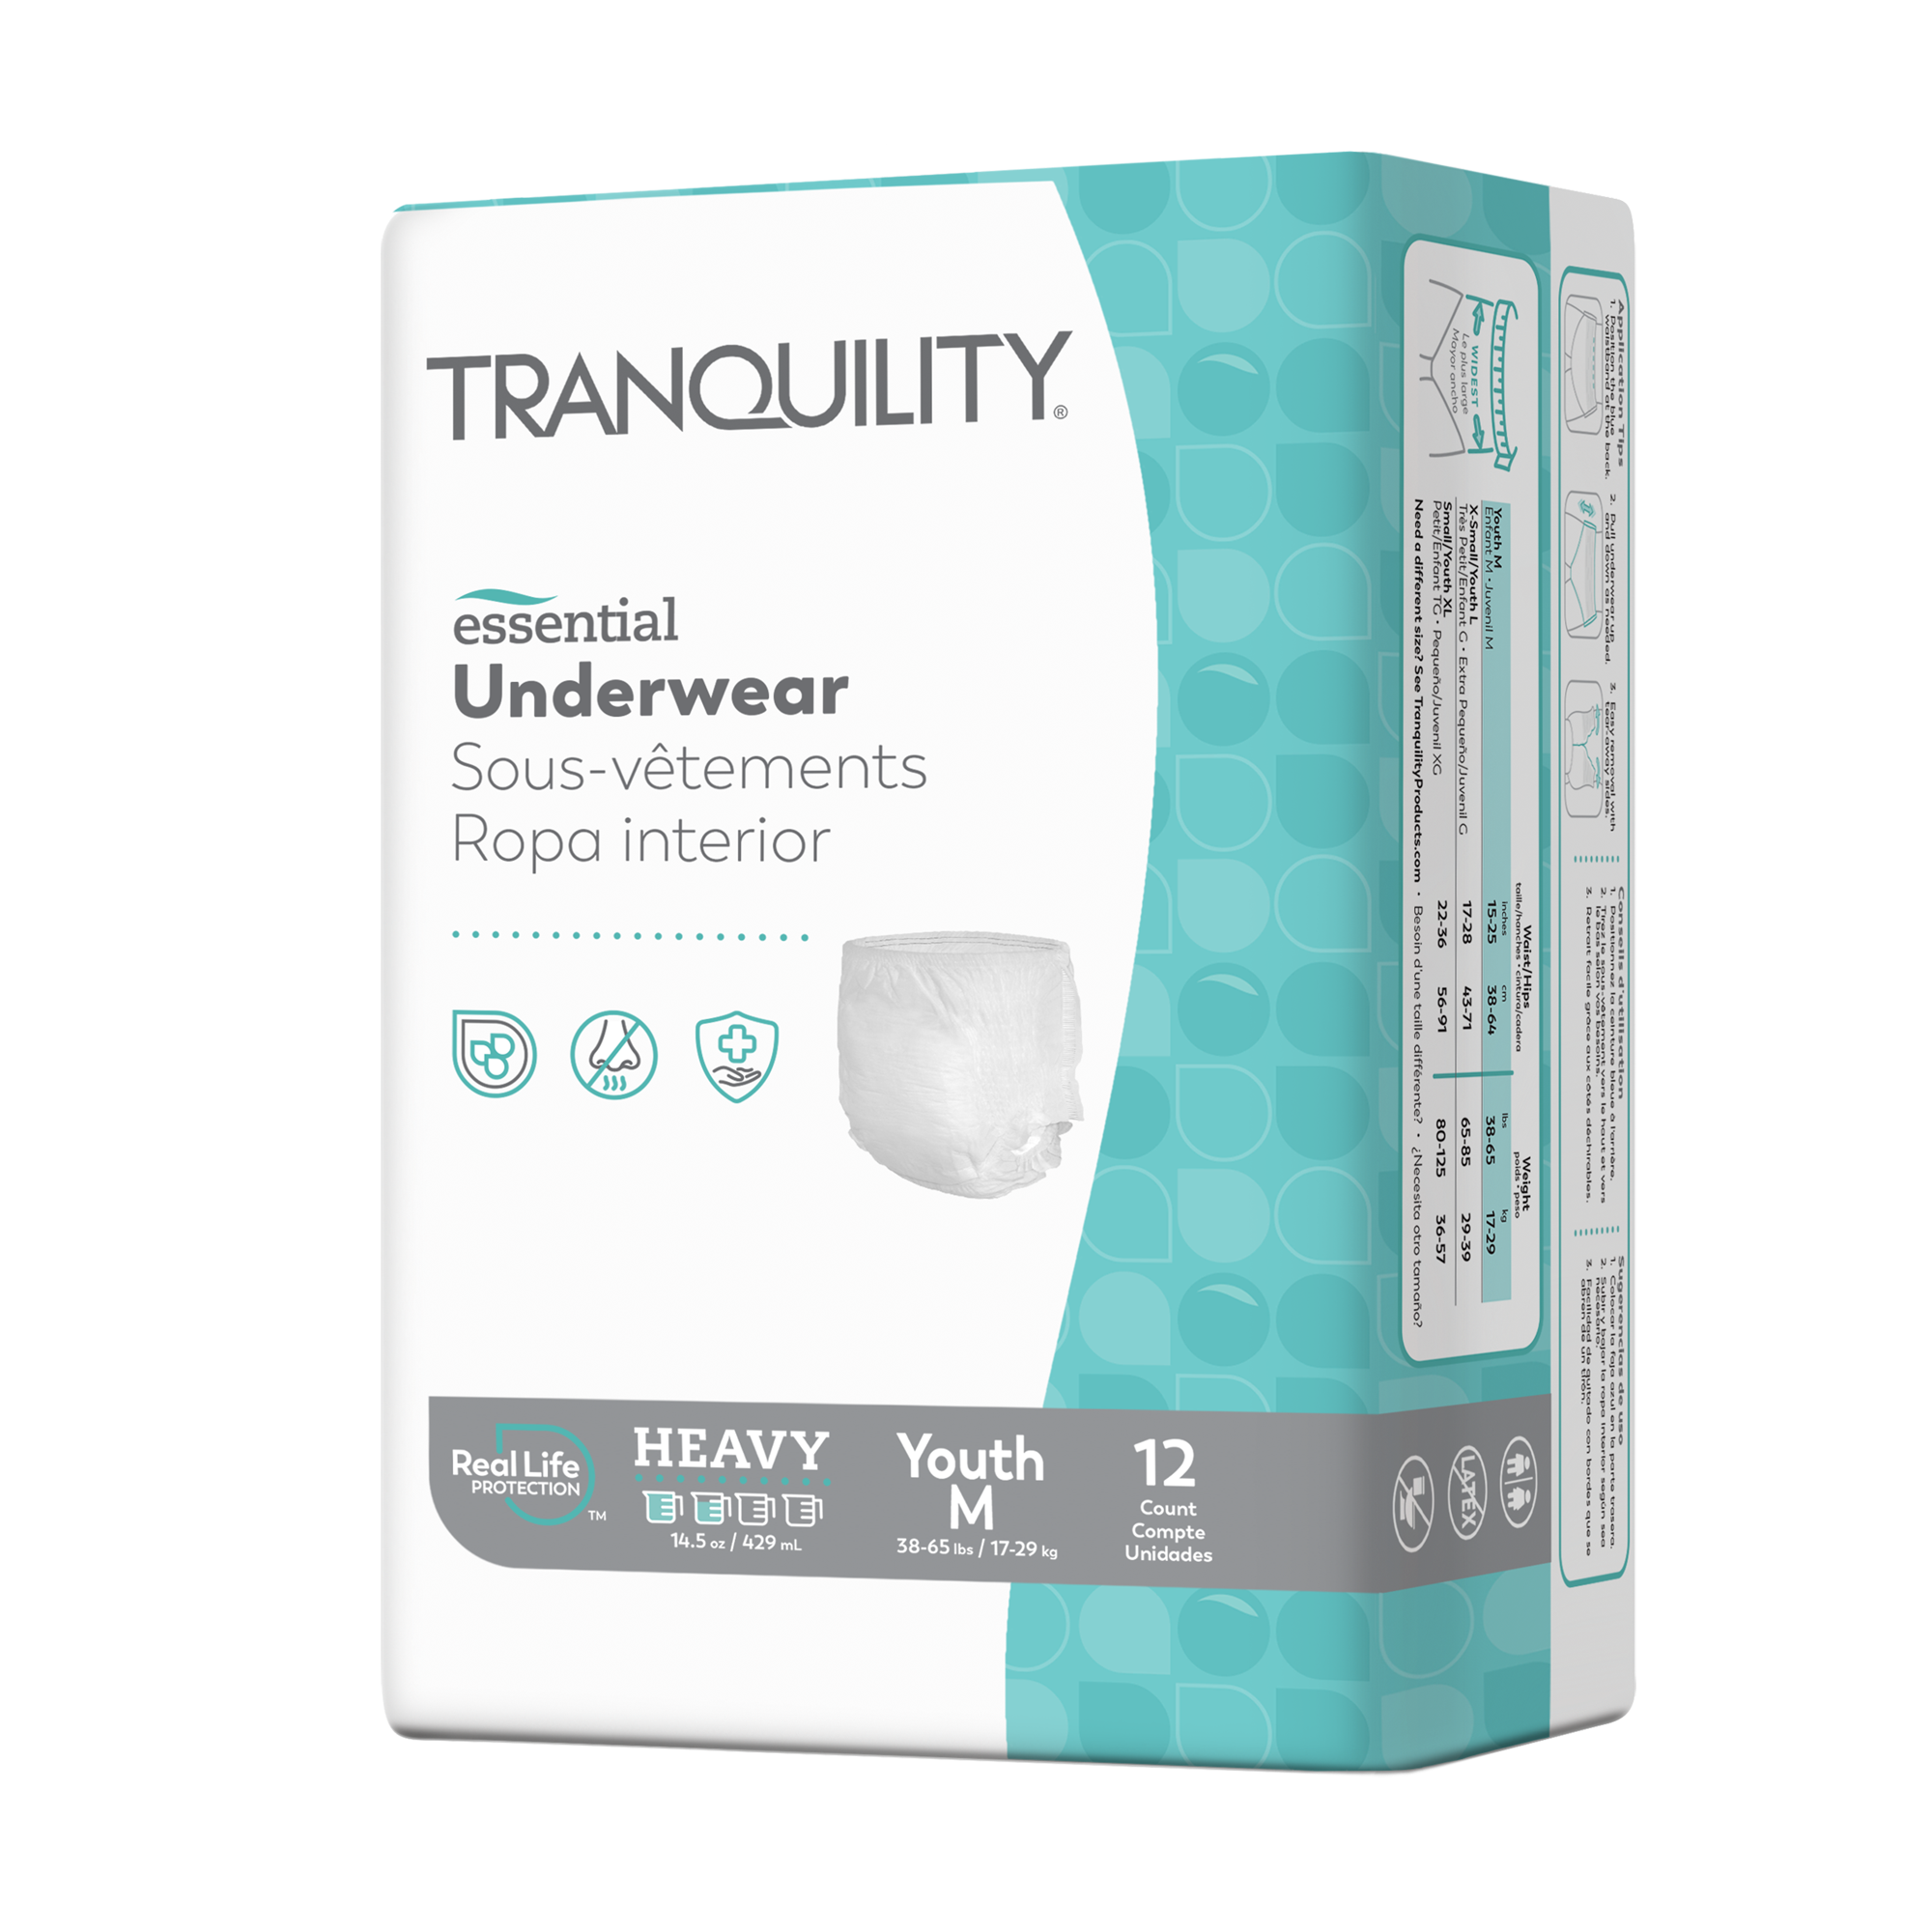 Tranquility Essential Underwear, Heavy